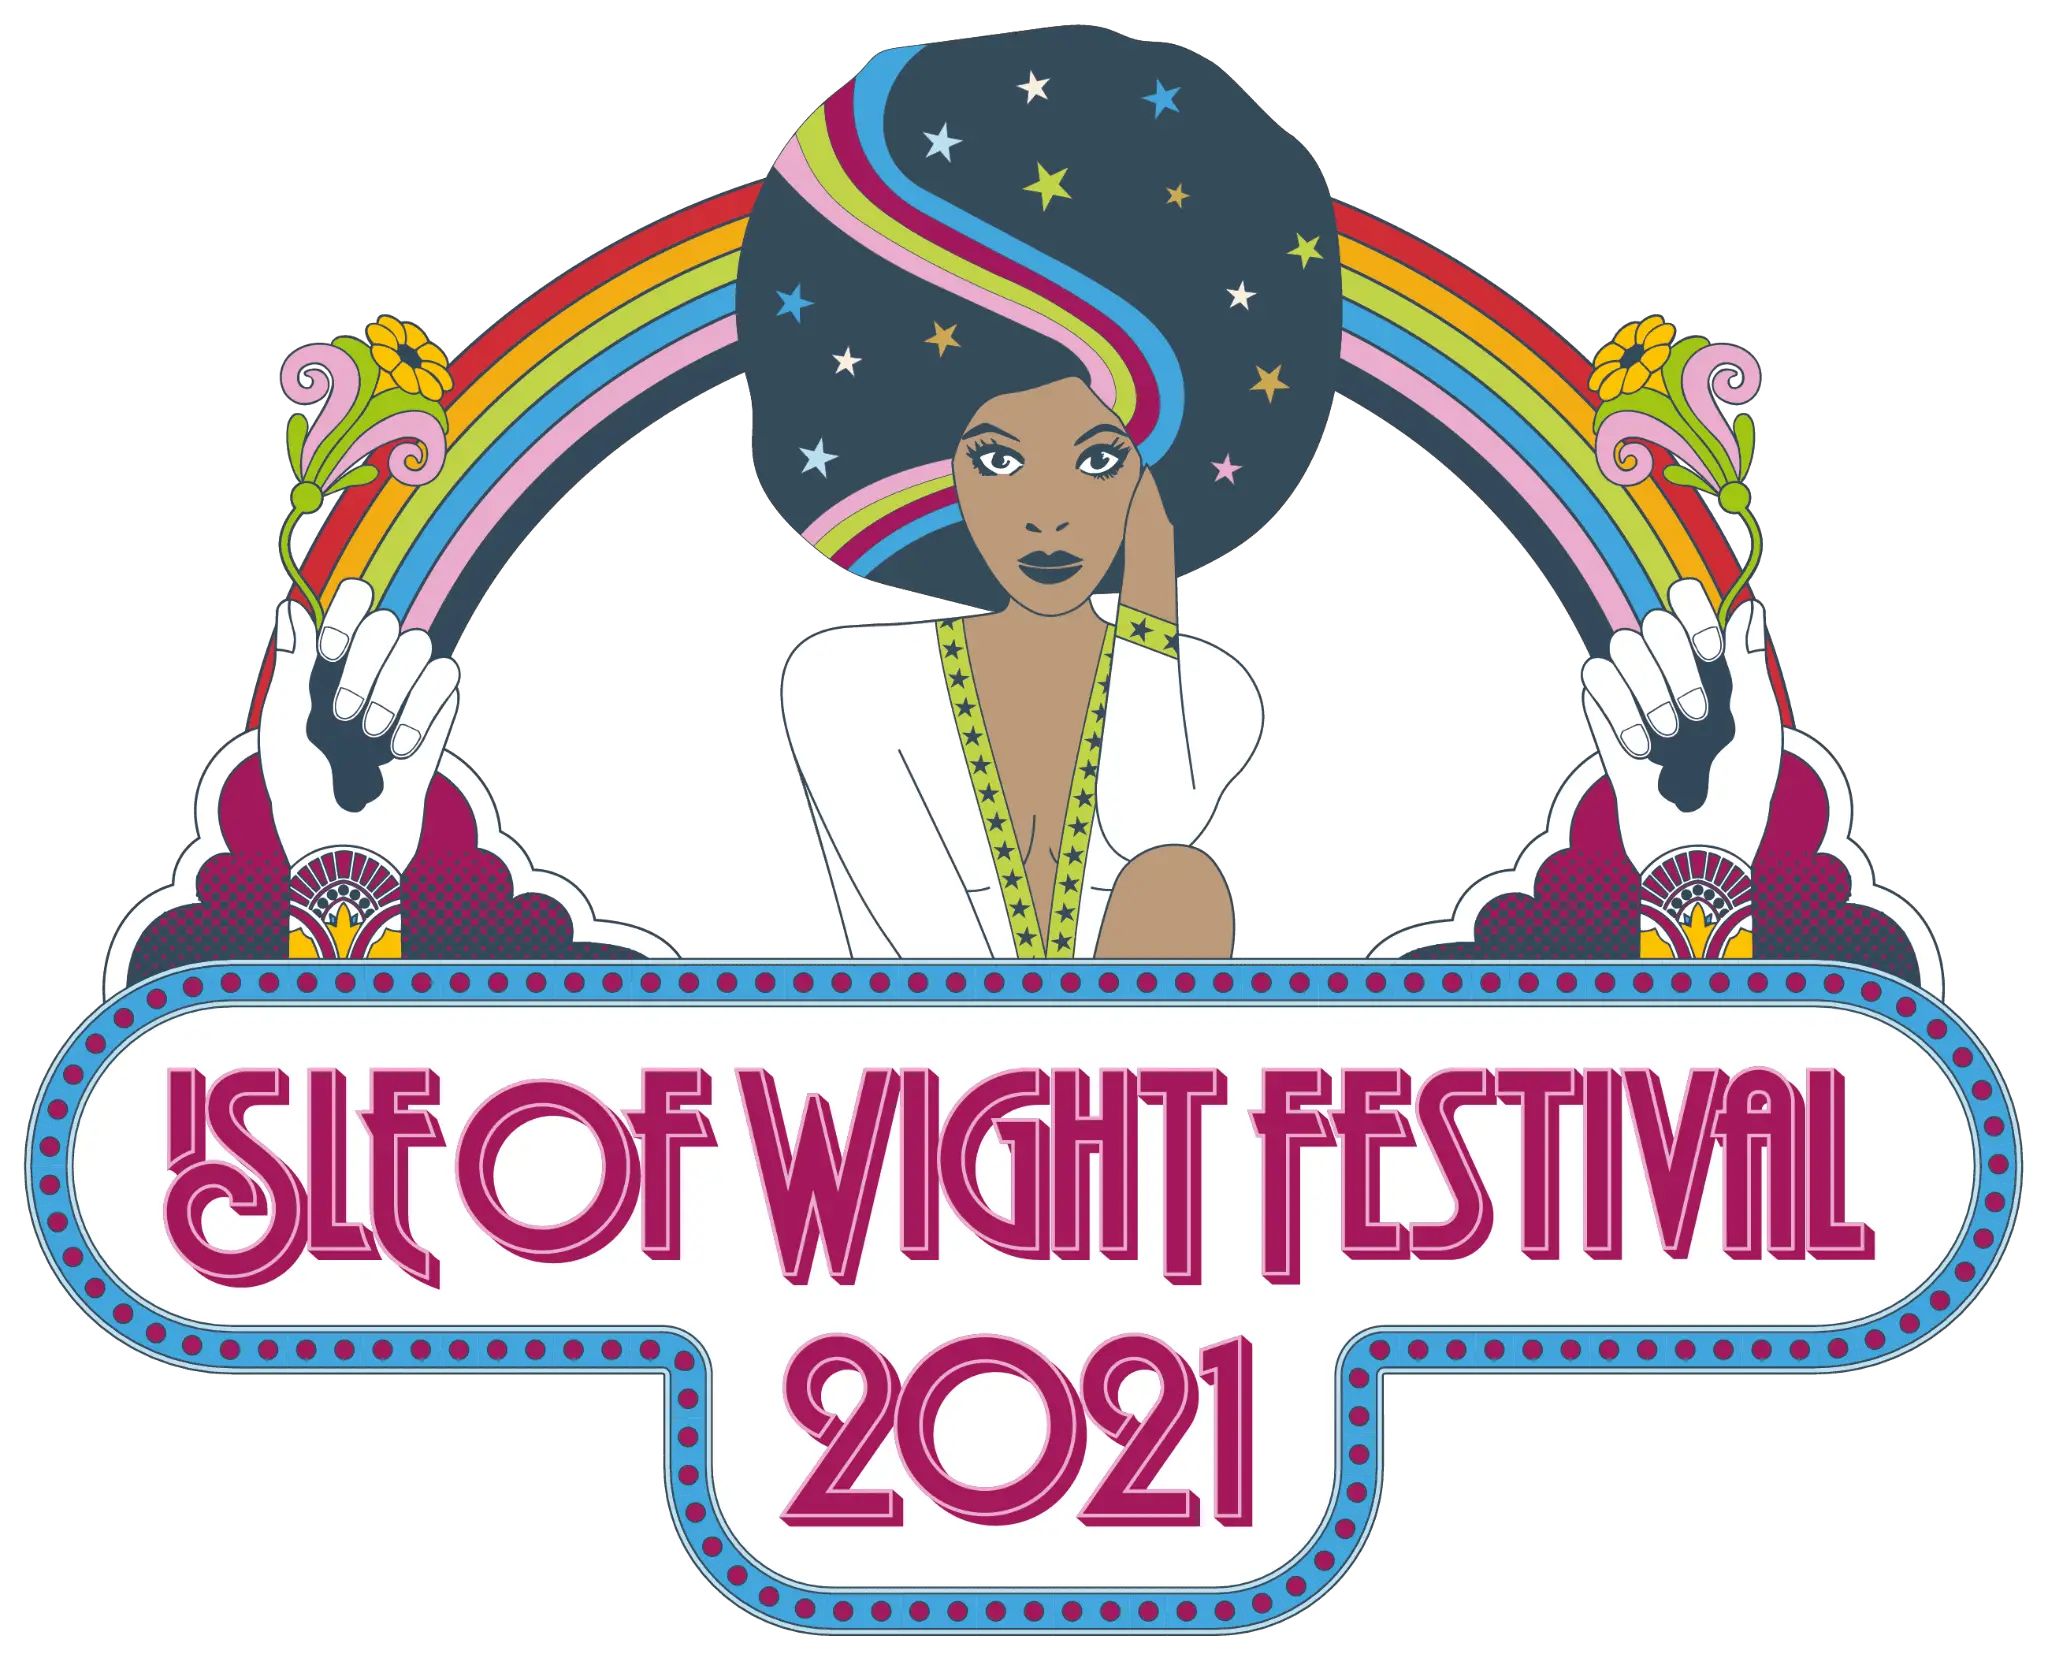 IW festival logo